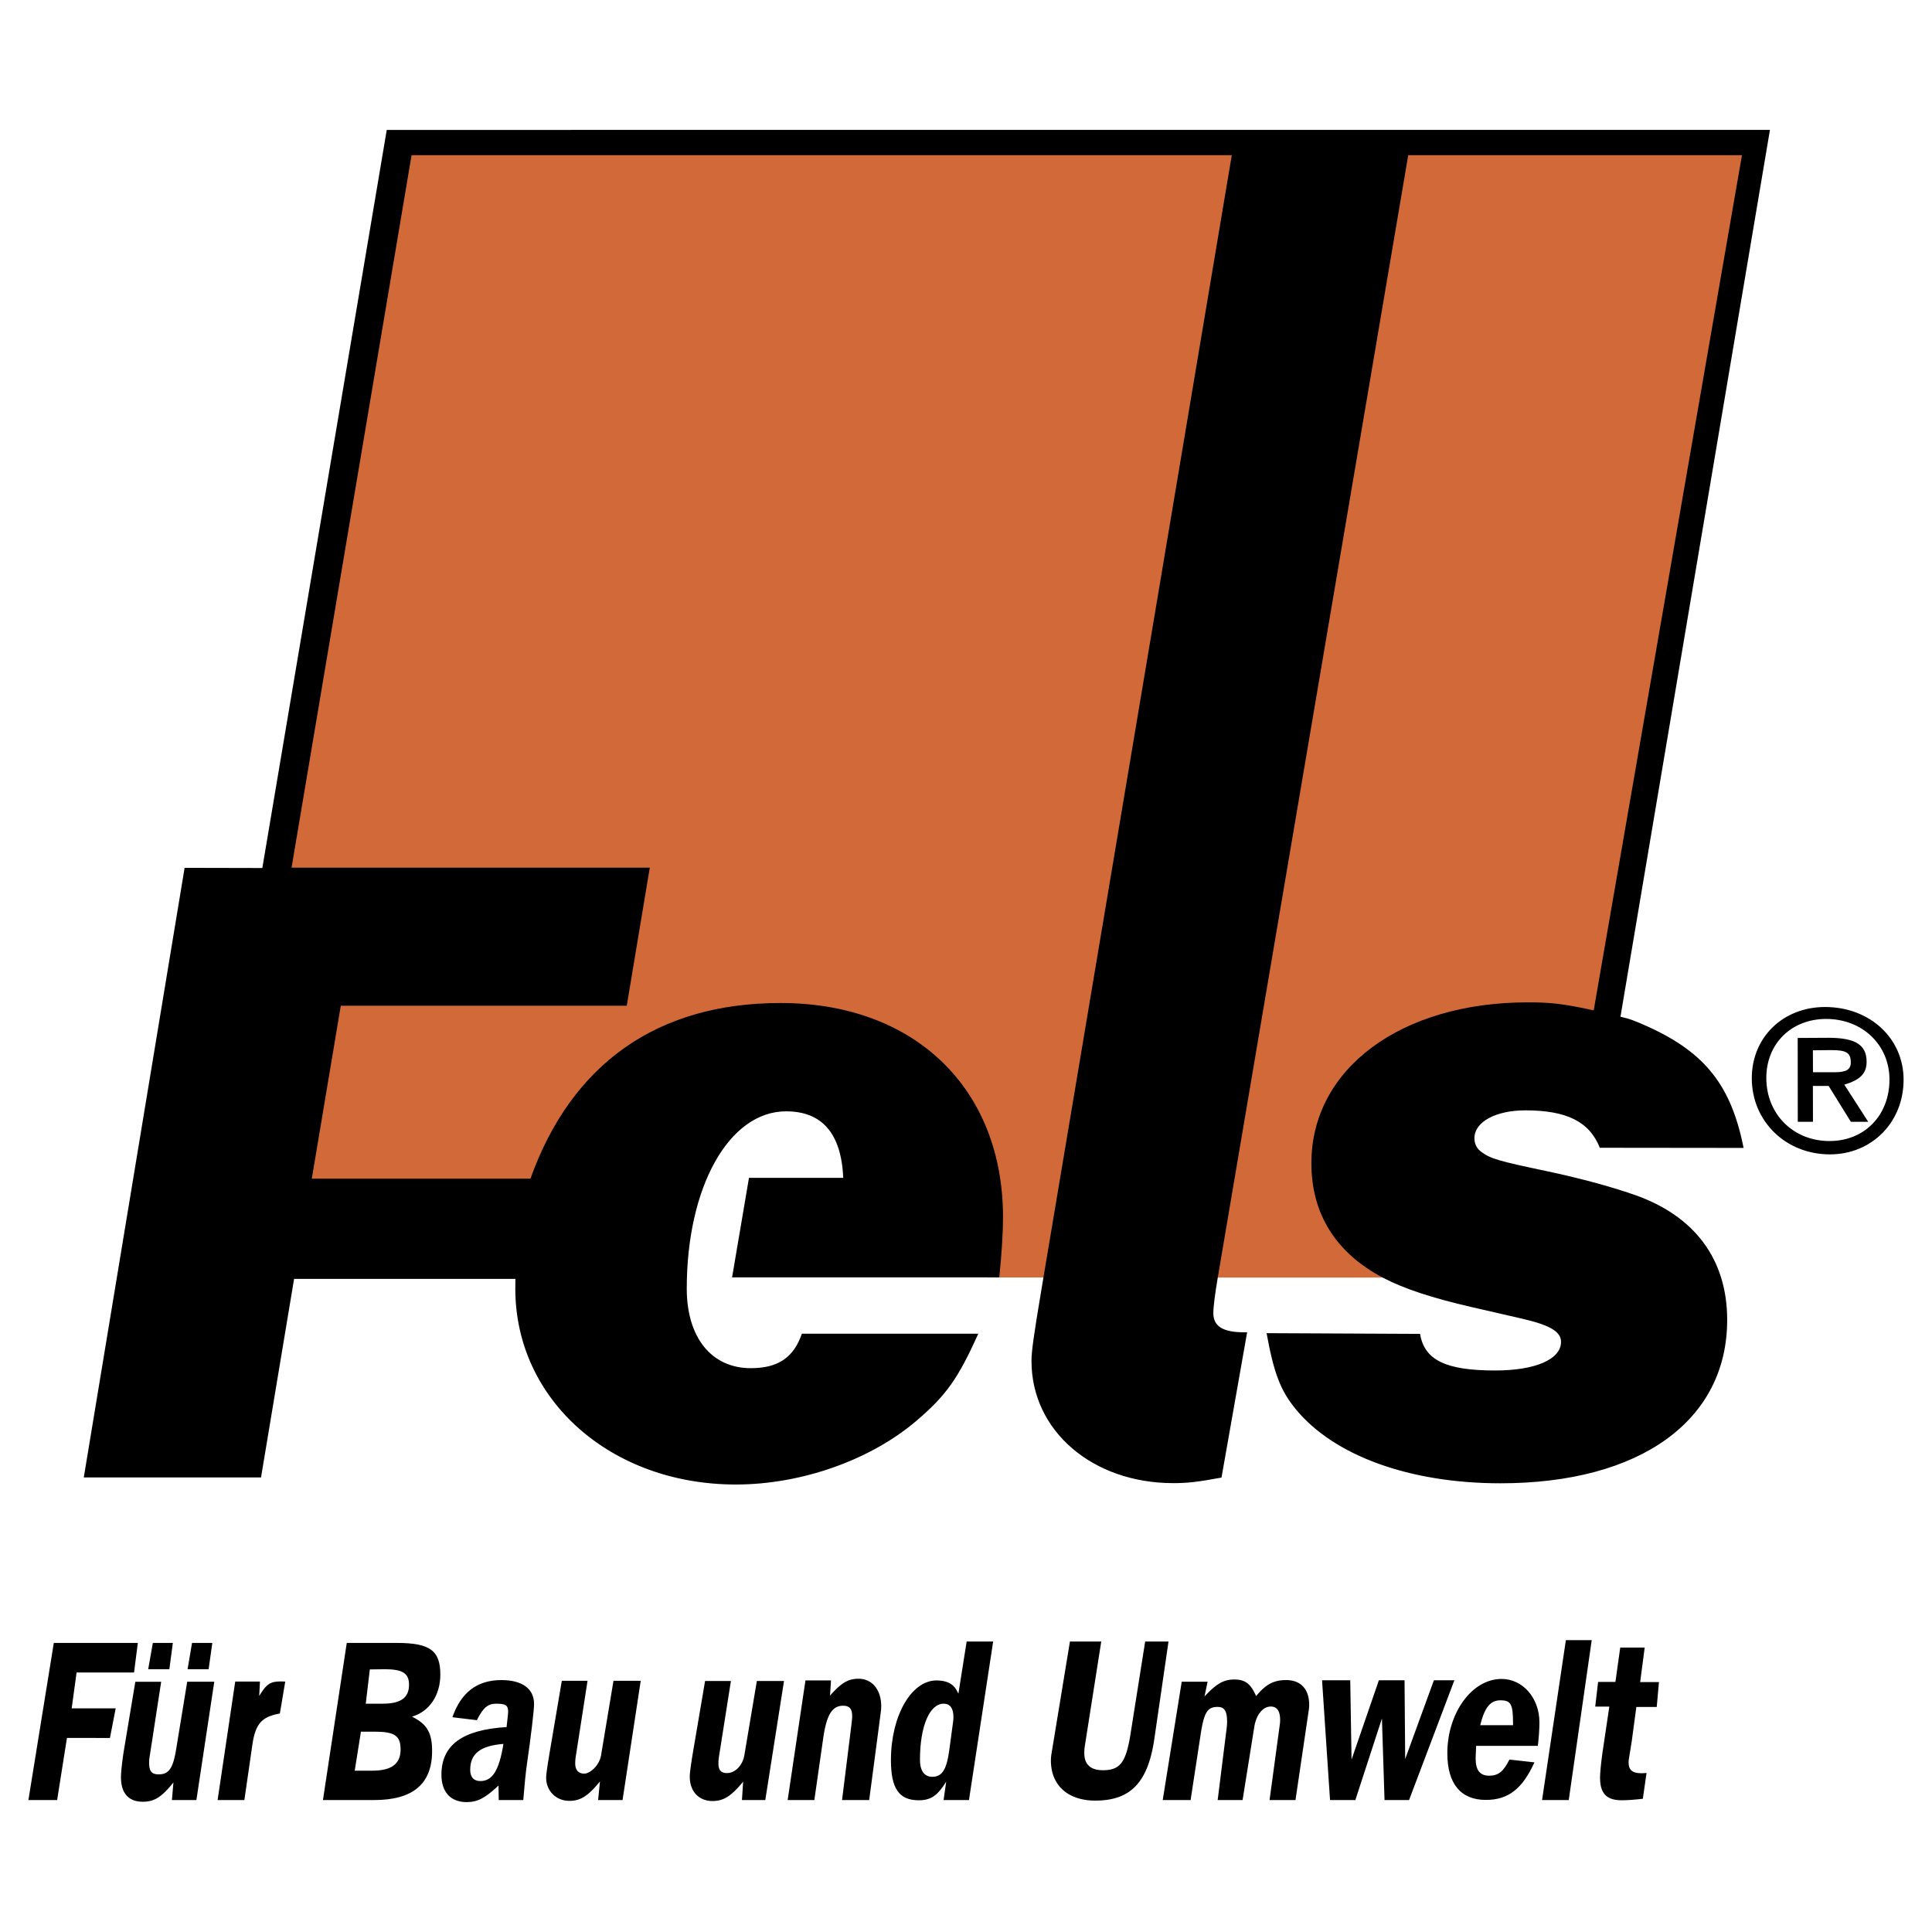 Fels-Naptha logo colors